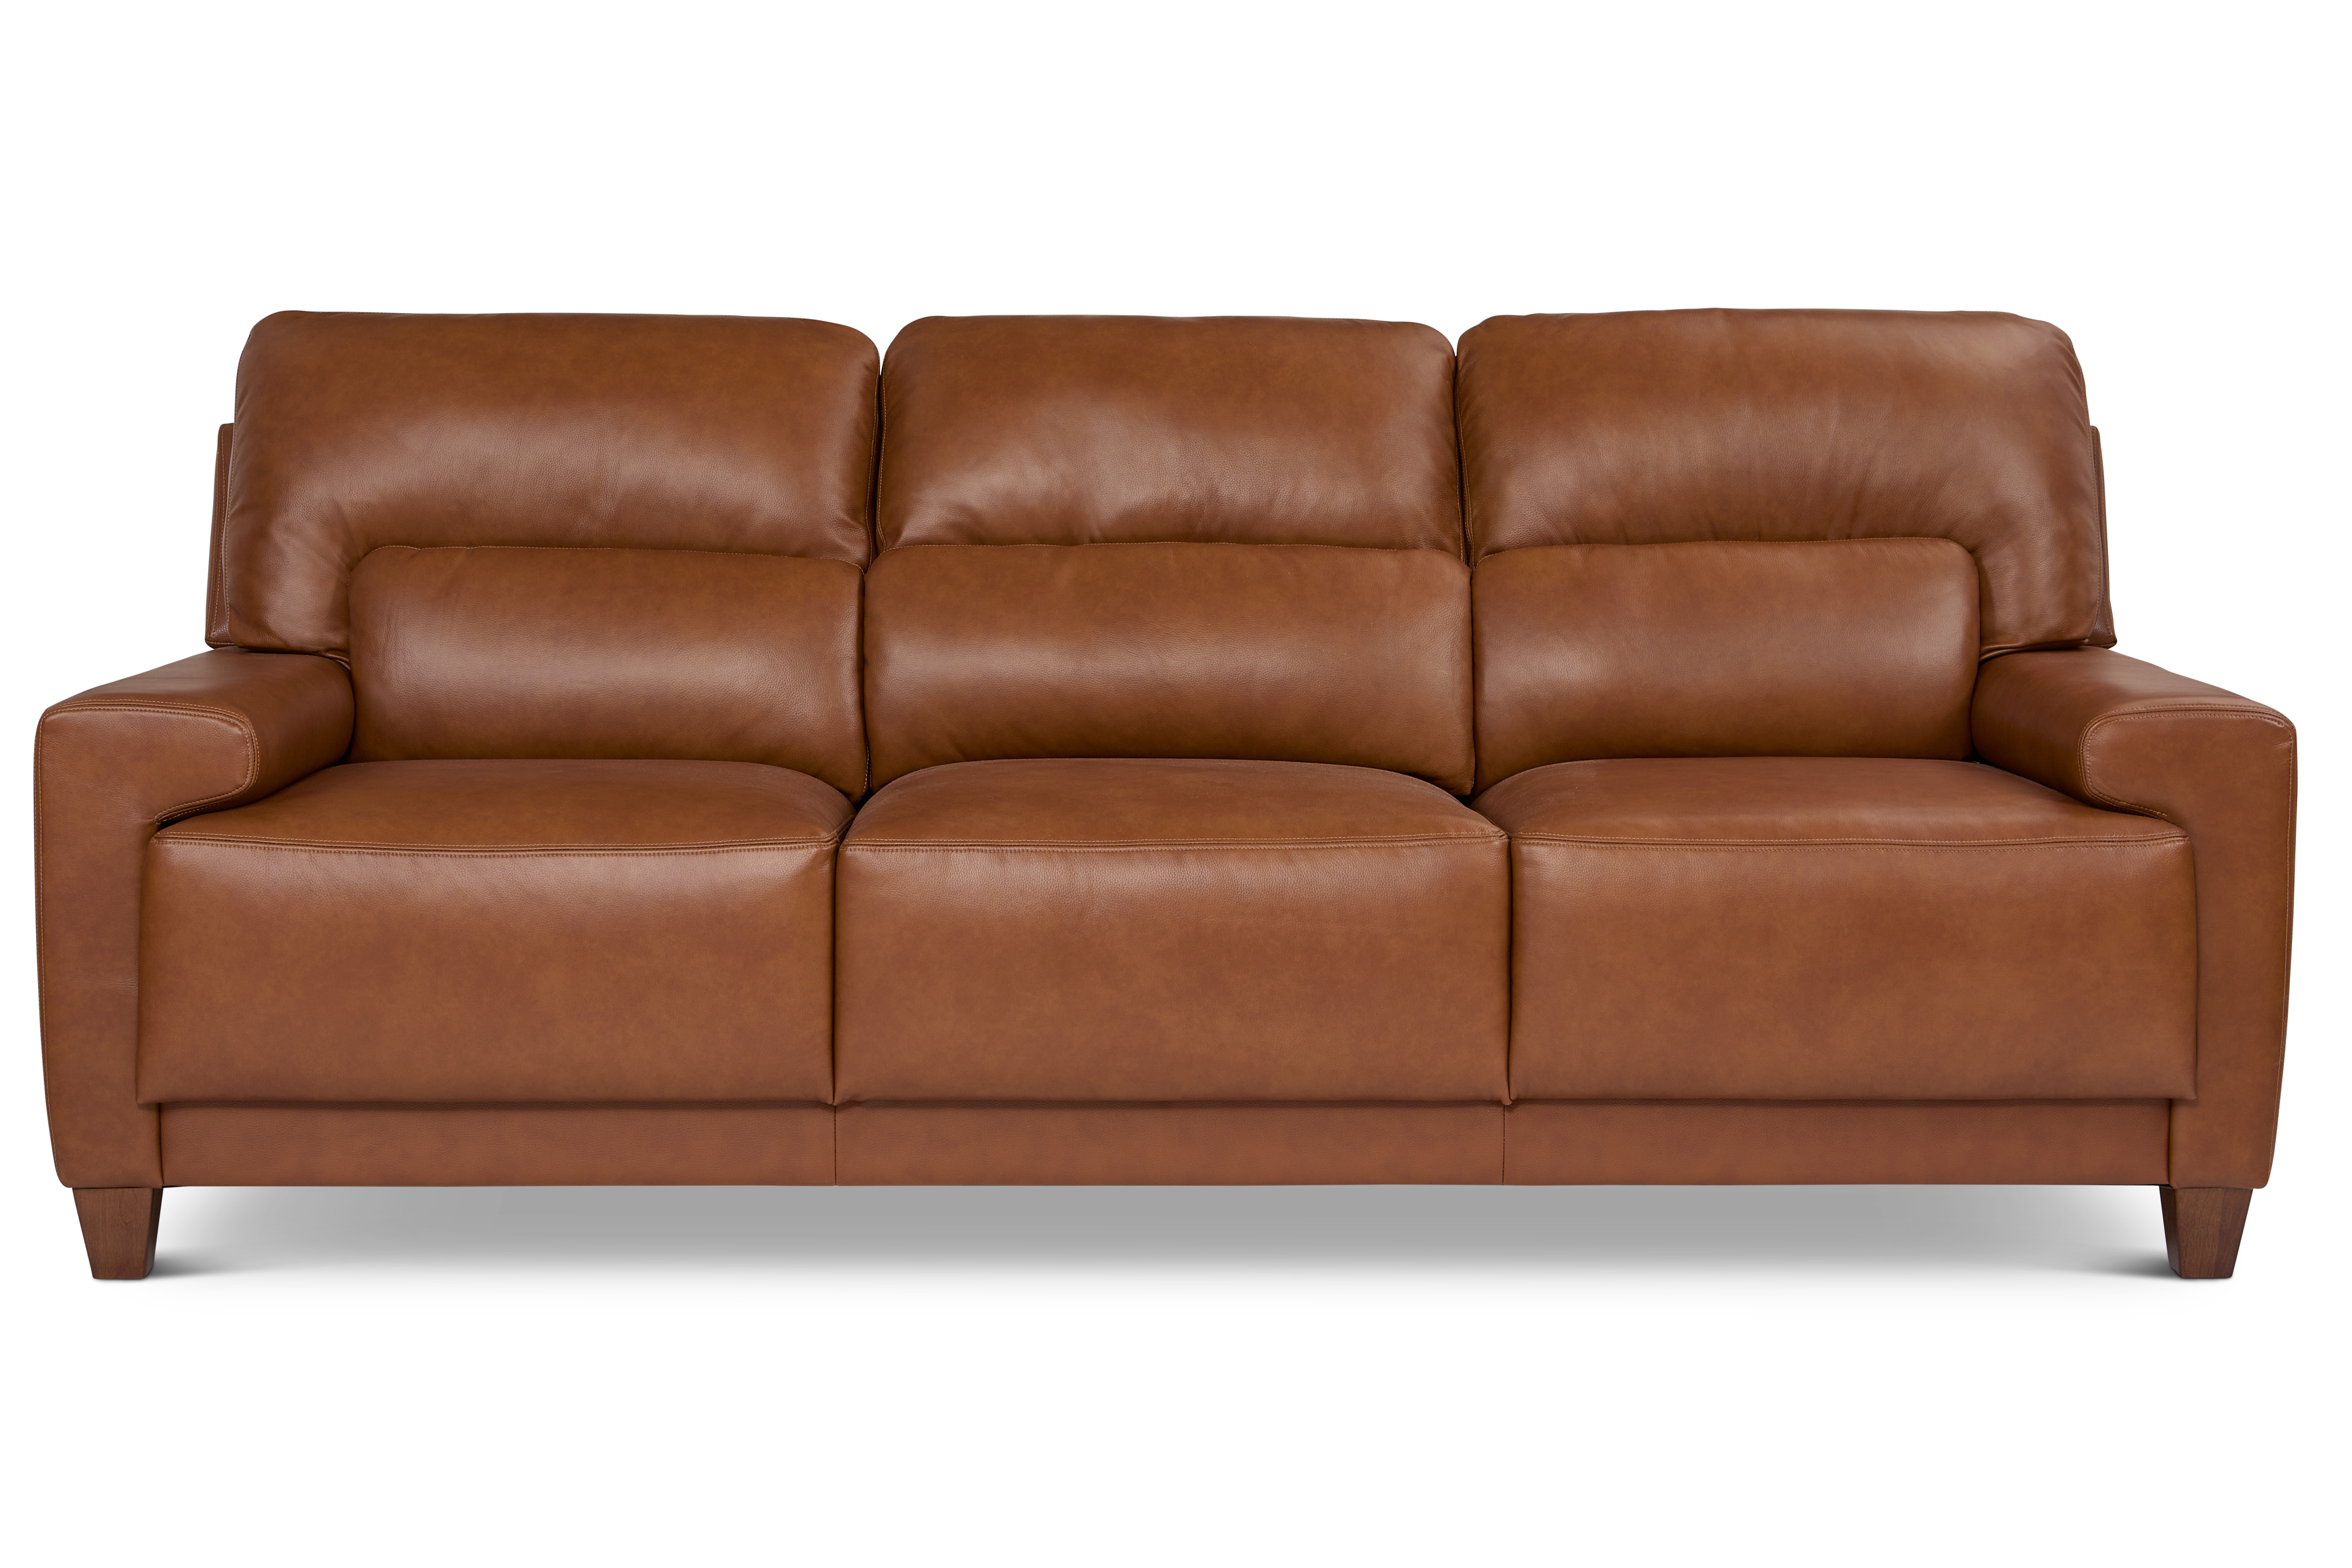 Image - 1 - Draper Leather Sofa